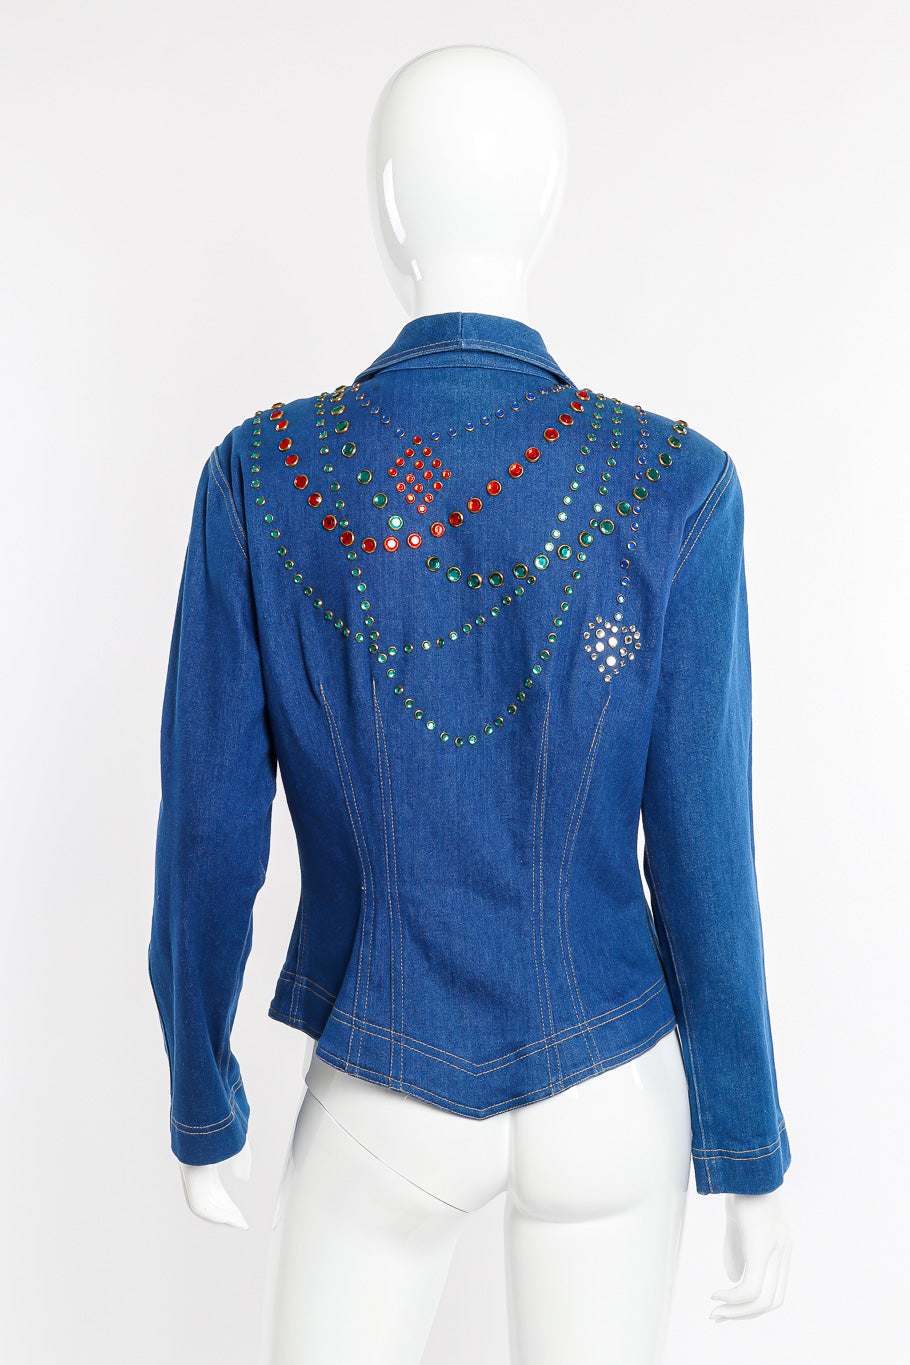 Vintage Lillie Rubin Crystal Studded Denim Jacket back view on mannequin @Recessla